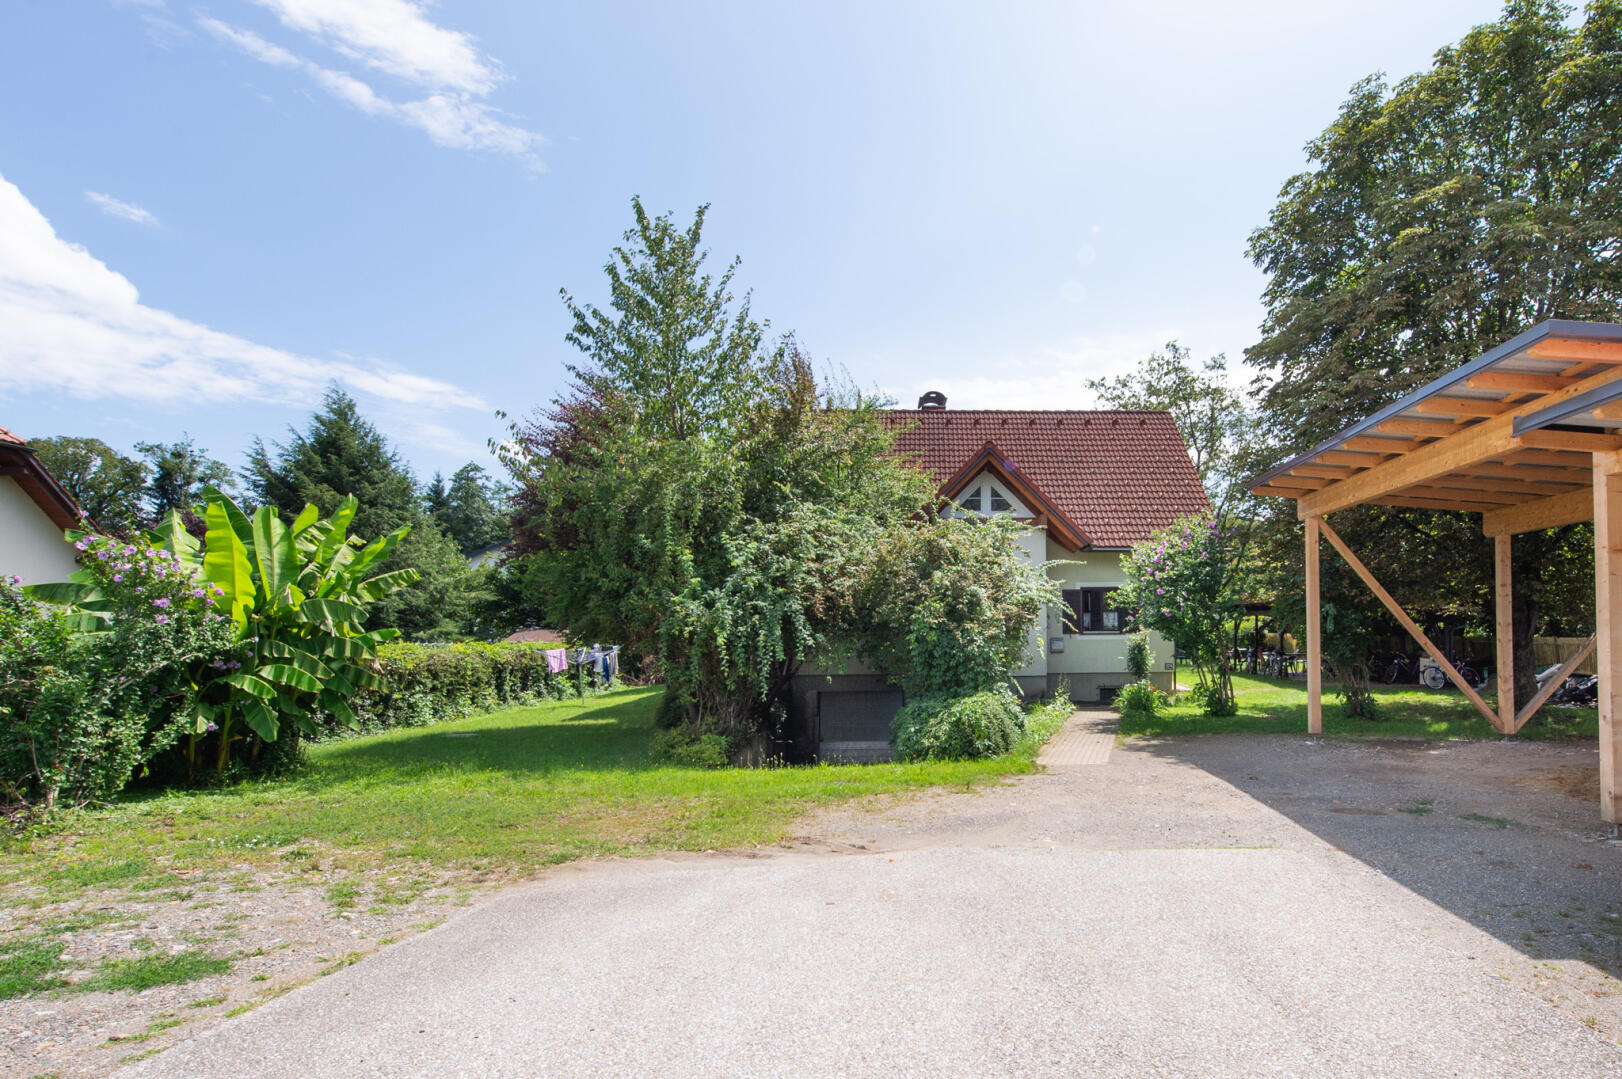 Haus zu kaufen: Eibiswald, 8552 Eibiswald - E Eibiswald - Asylheim-16 (1)